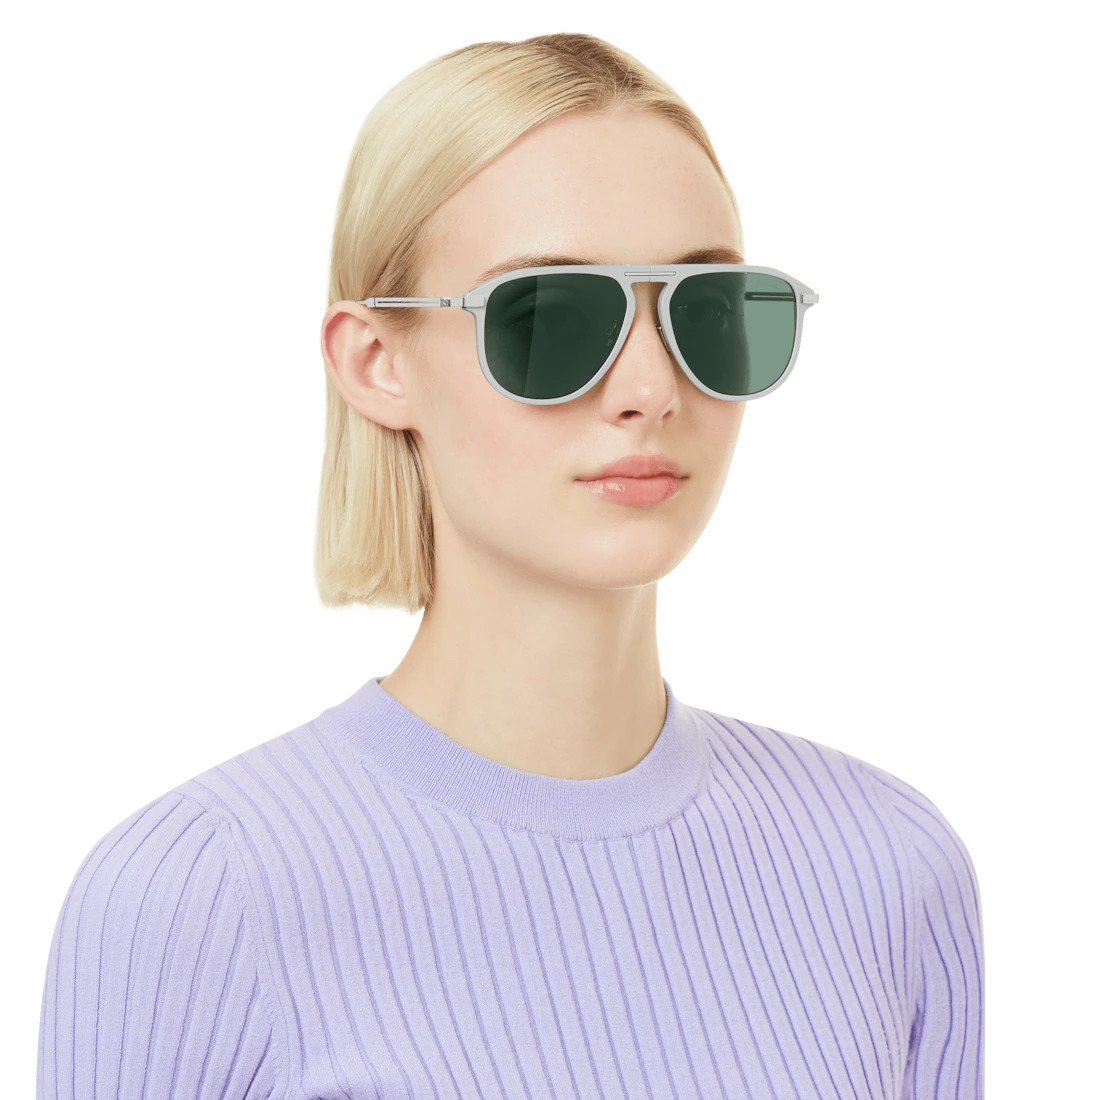 Eyewear Pilot Foldable Matte Silver Sunglasses - 2